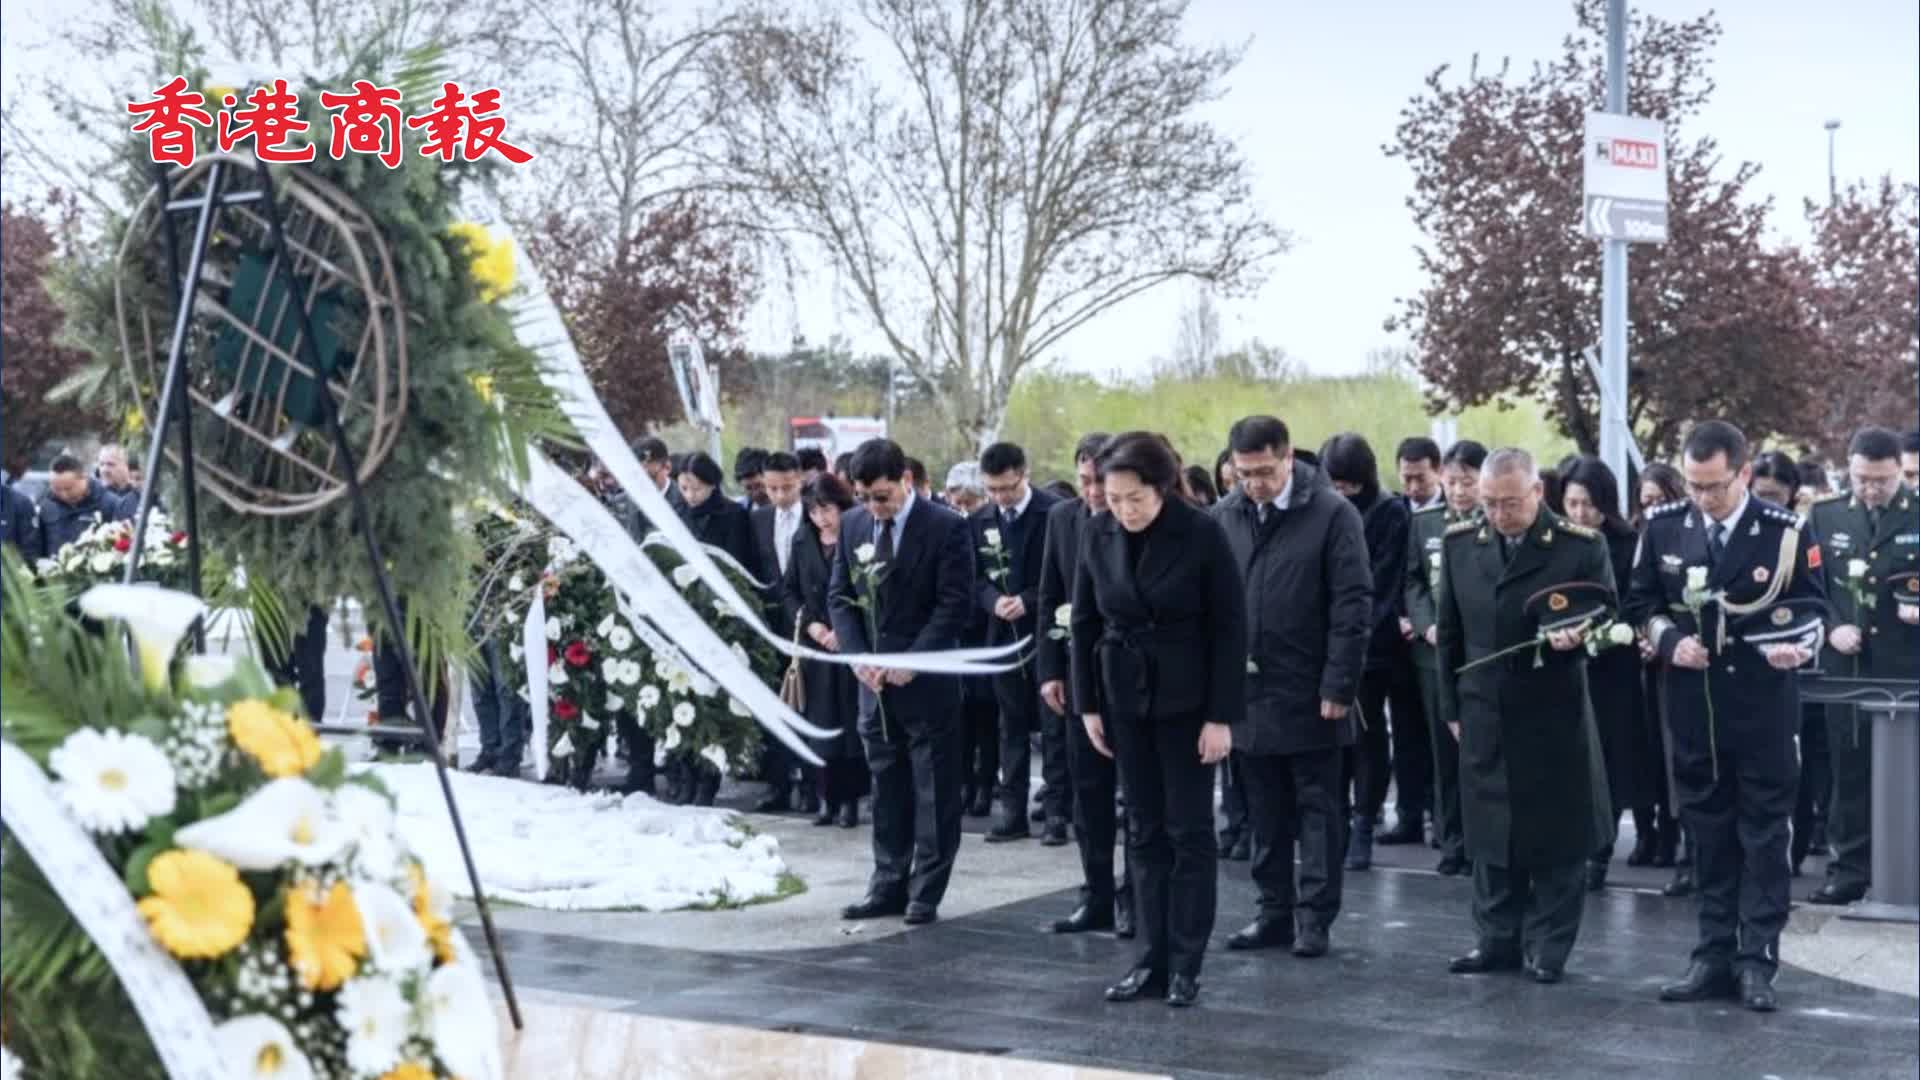 有片 | 中國駐塞爾維亞使館 旅塞僑胞等緬懷北約轟炸中犧牲的三名烈士